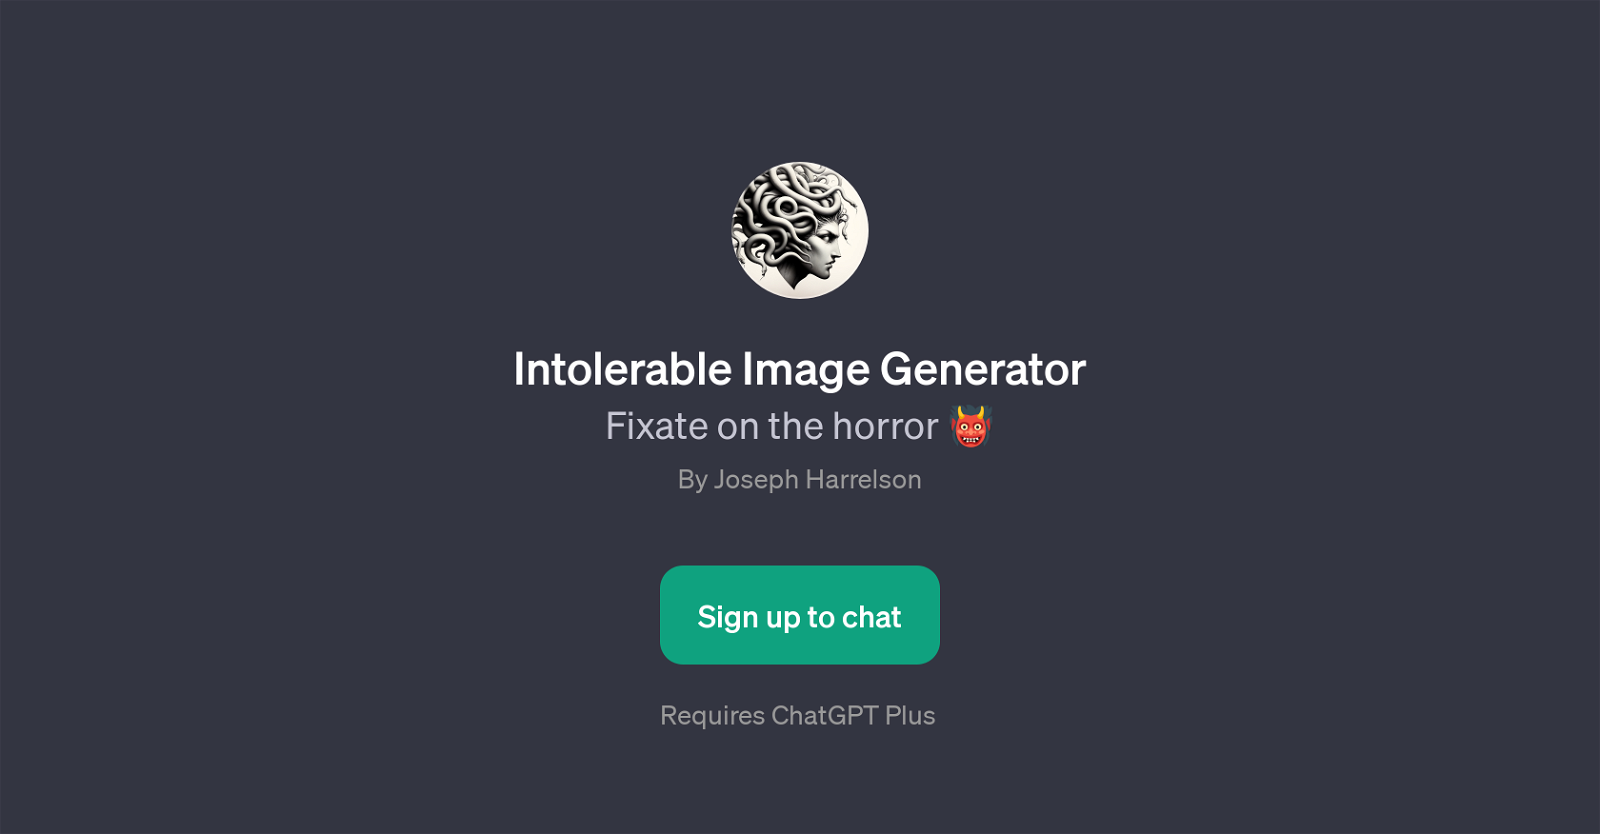 Intolerable Image Generator website